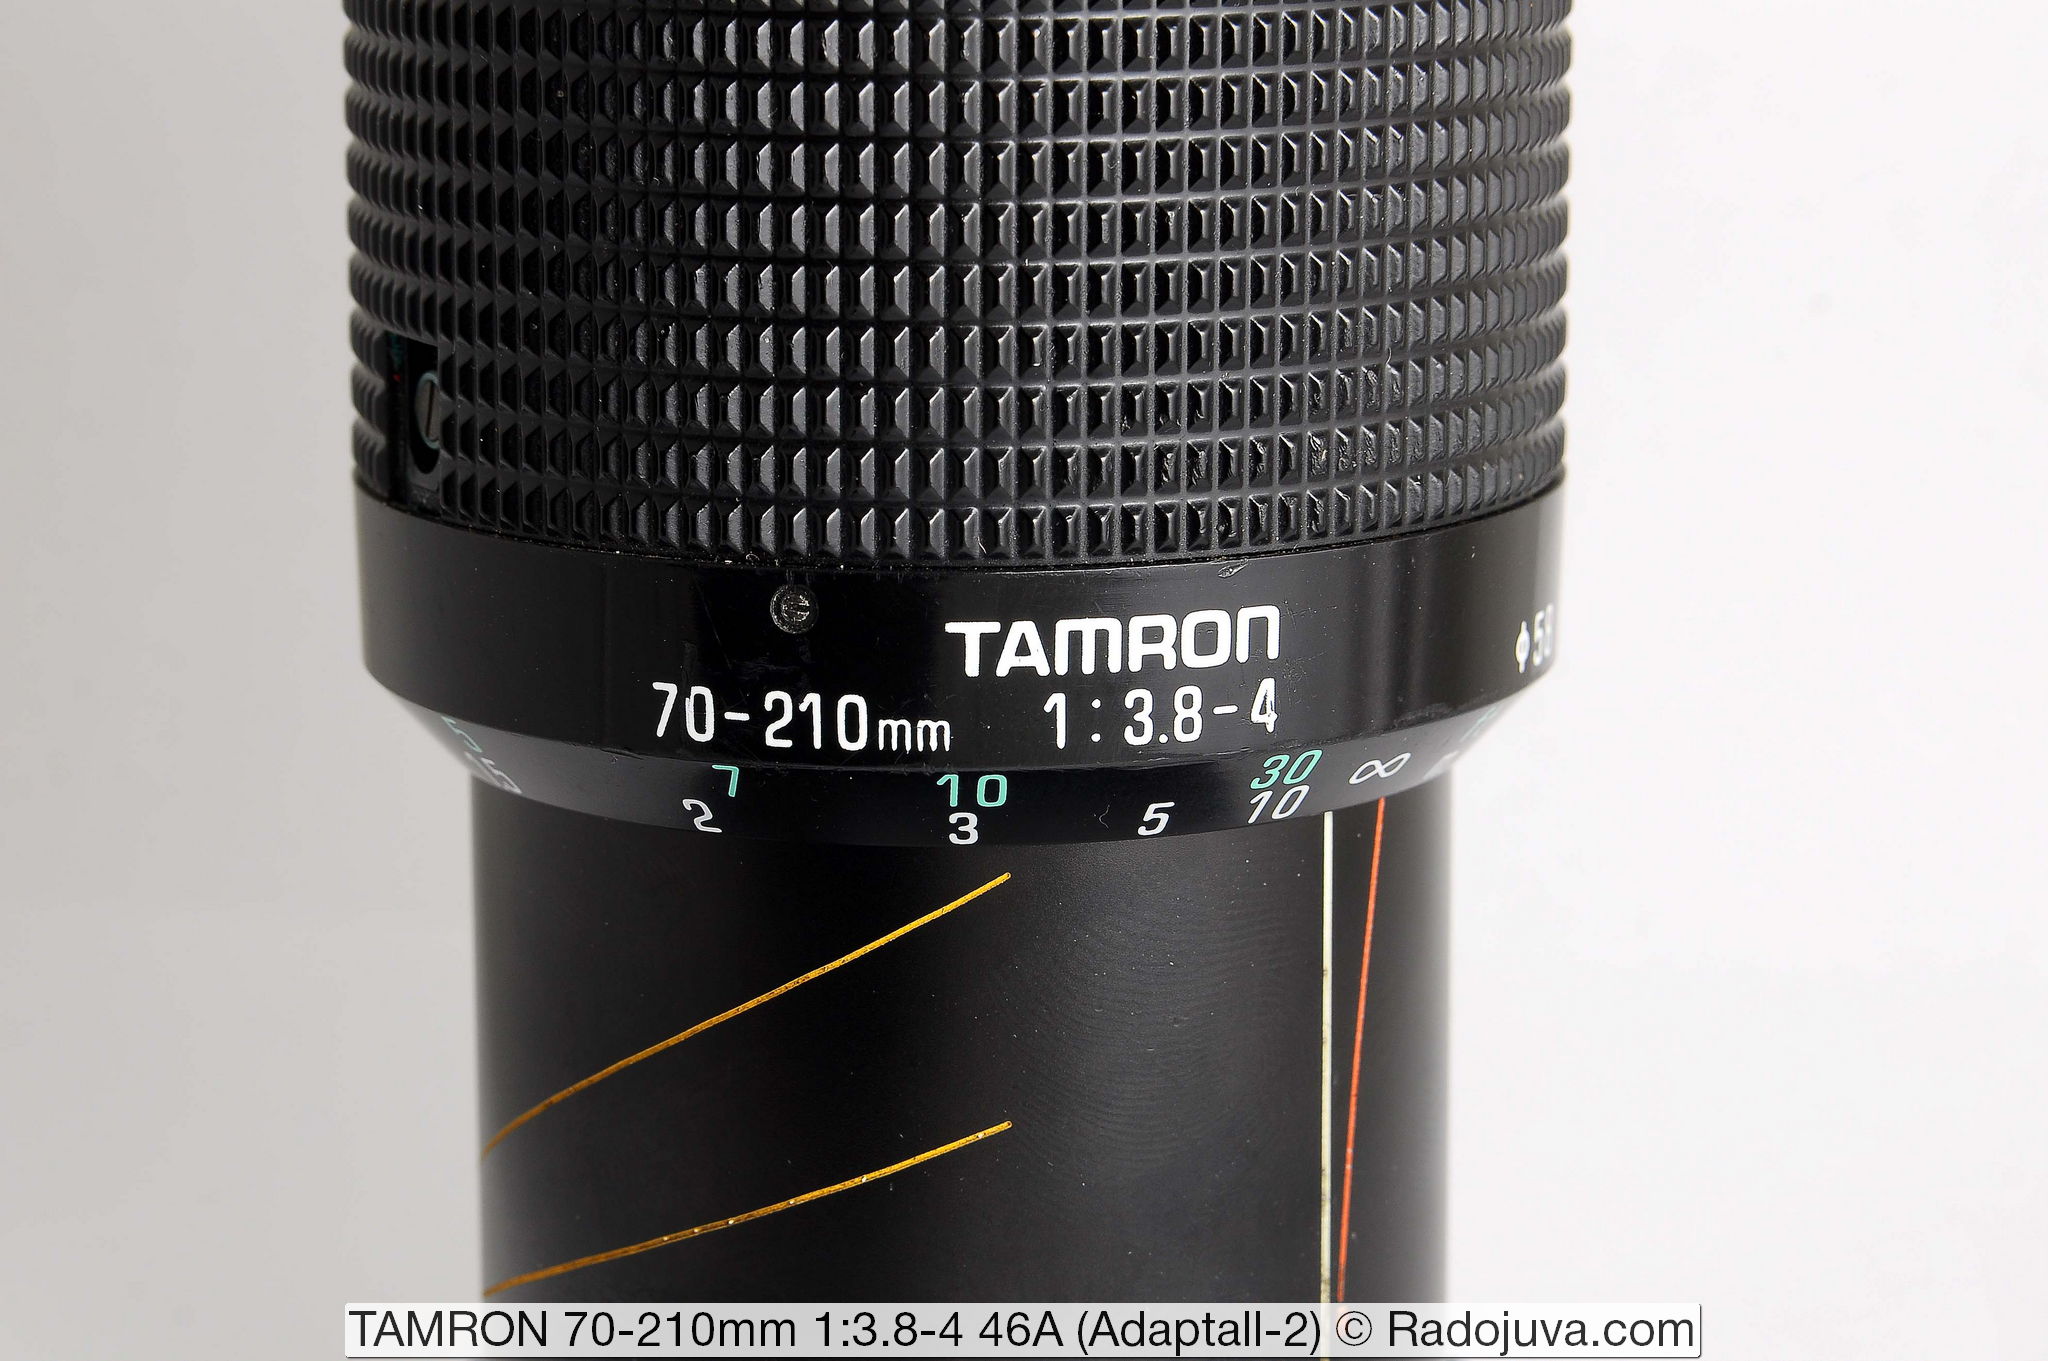 TAMRON 70-210 mm 1:3.8-4 46A (Adaptall-2)